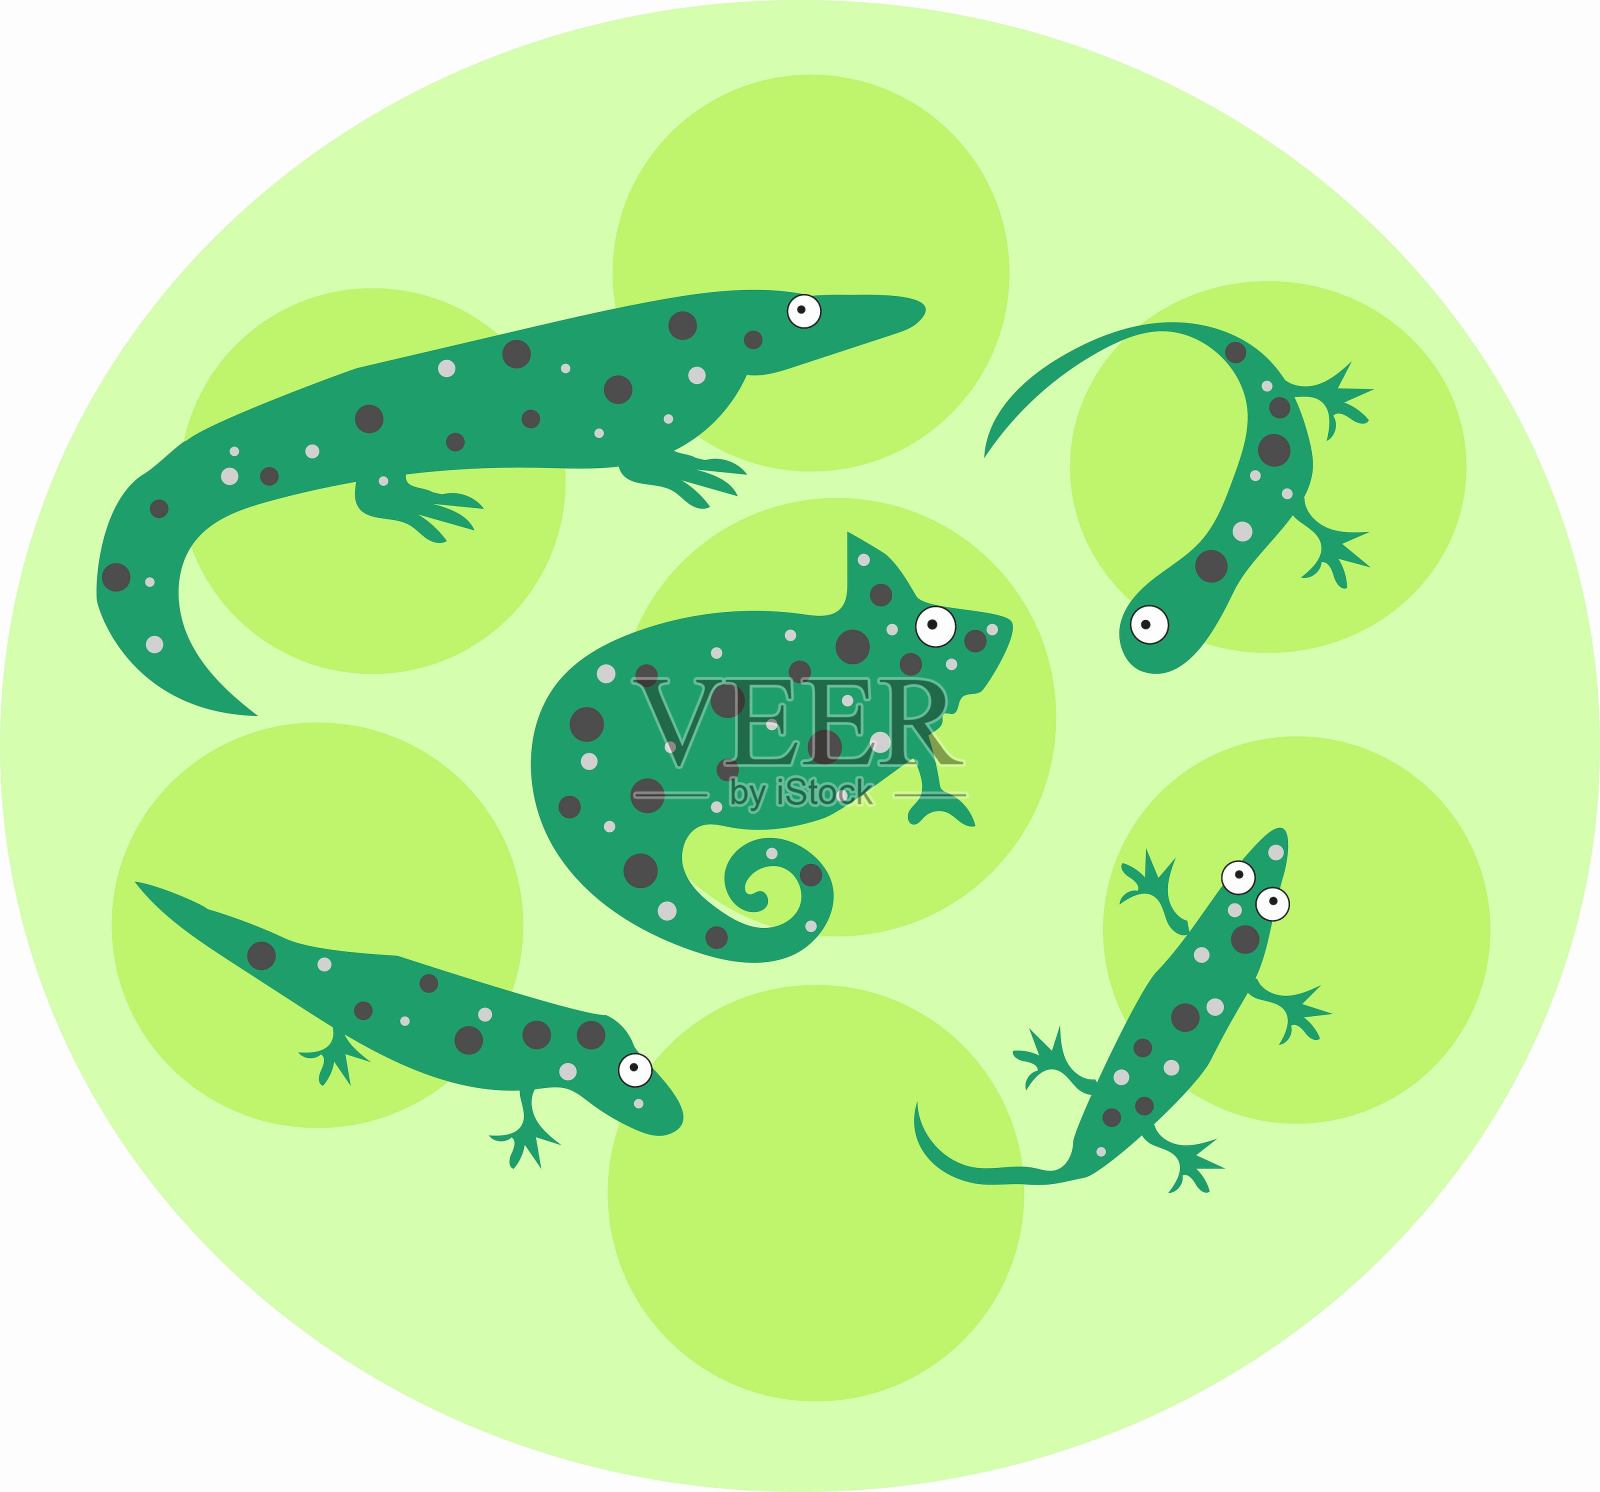 明亮的绿色蜥蜴在带有圆圈的浅色背景上设计元素图片